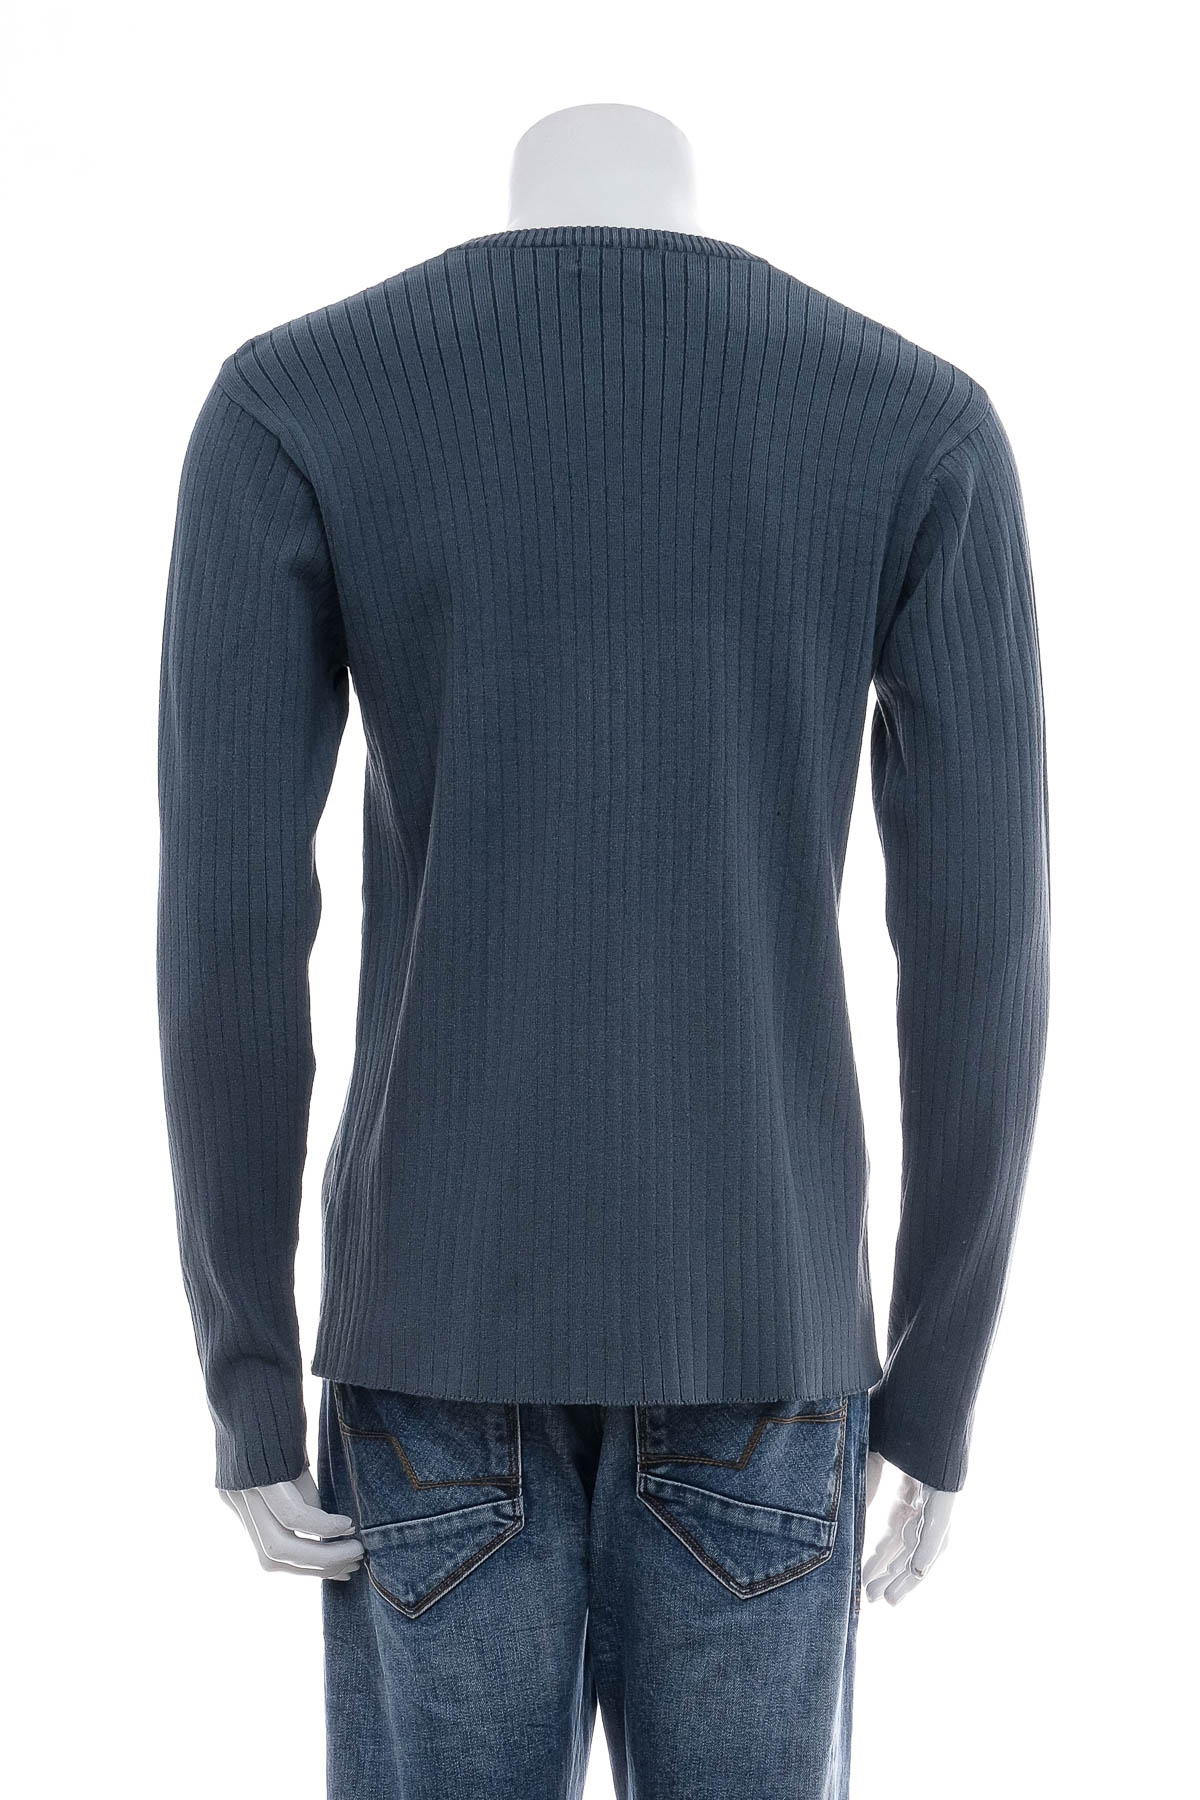 Men's sweater - Claiborne - 1